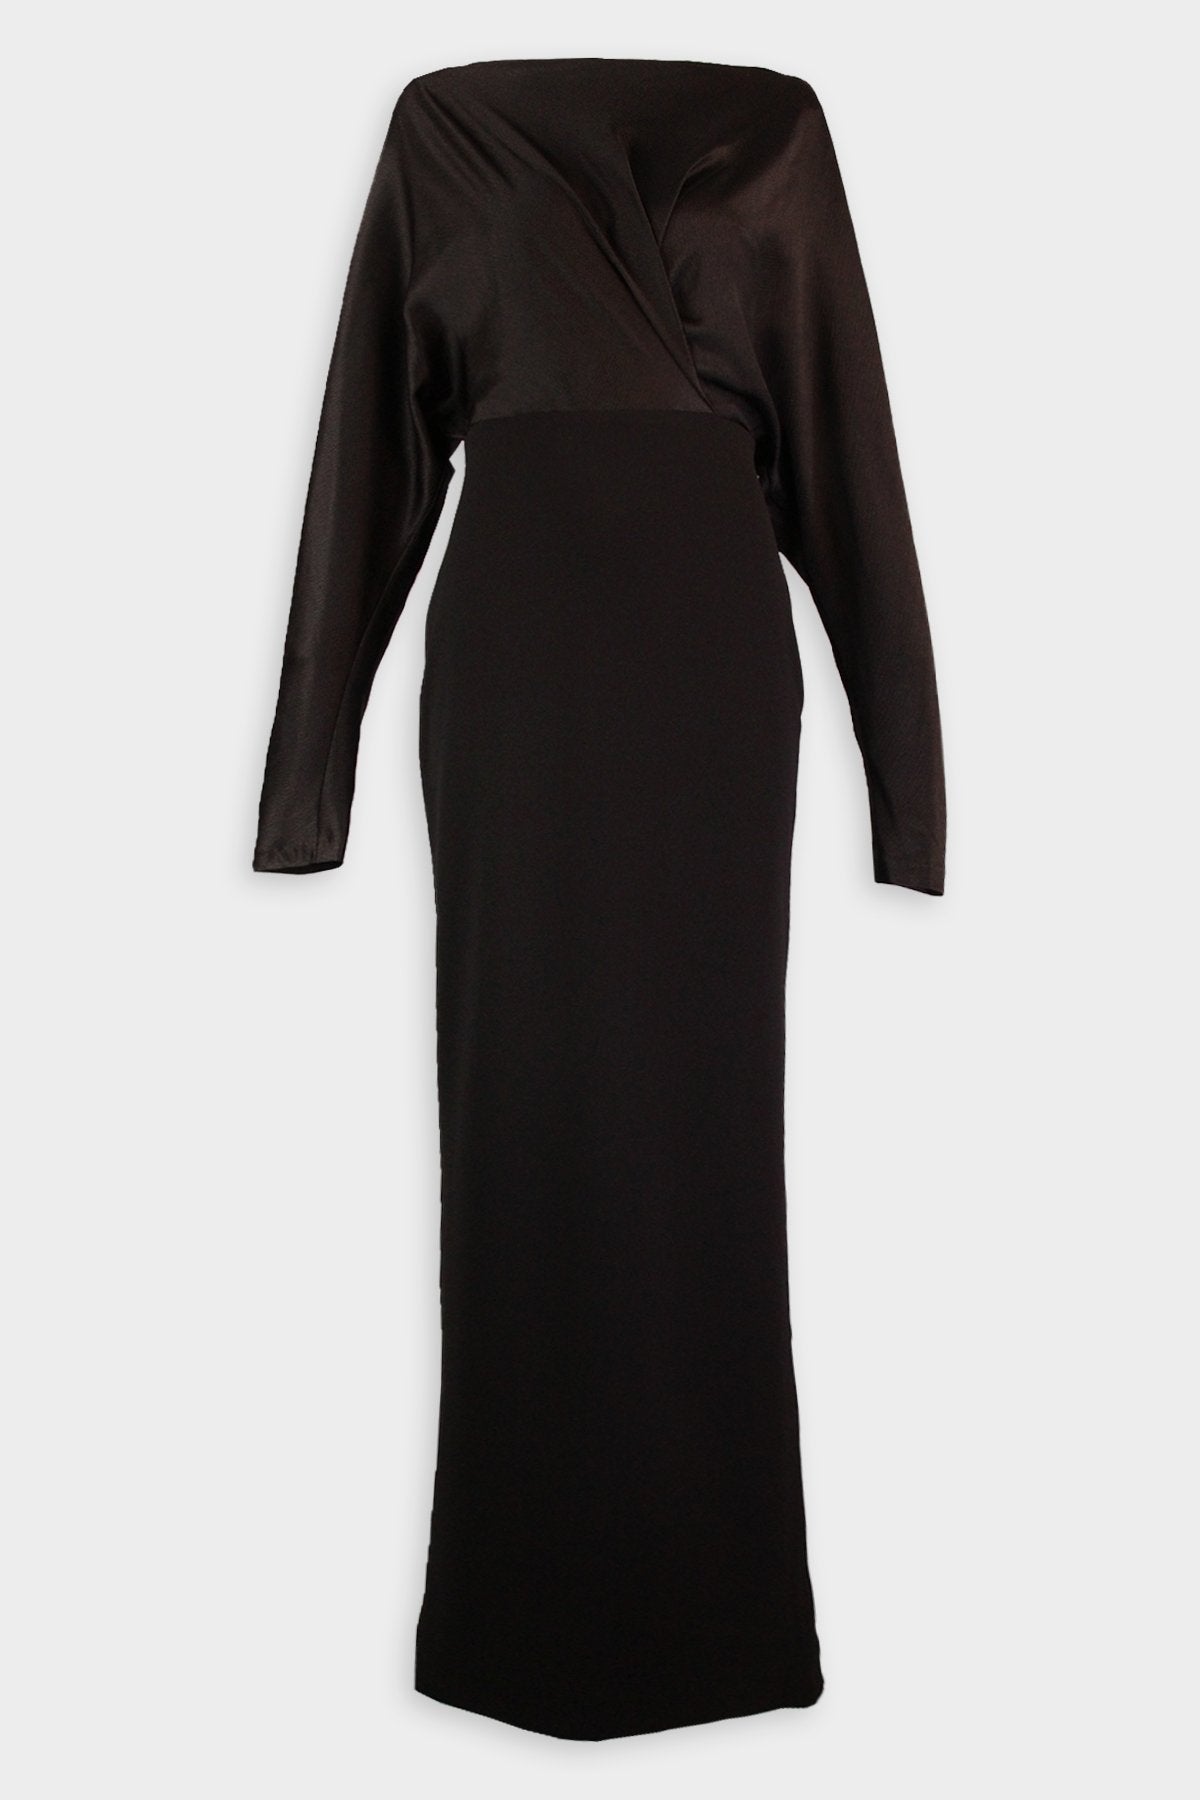 Aurora Maxi Dress in Black - shop-olivia.com